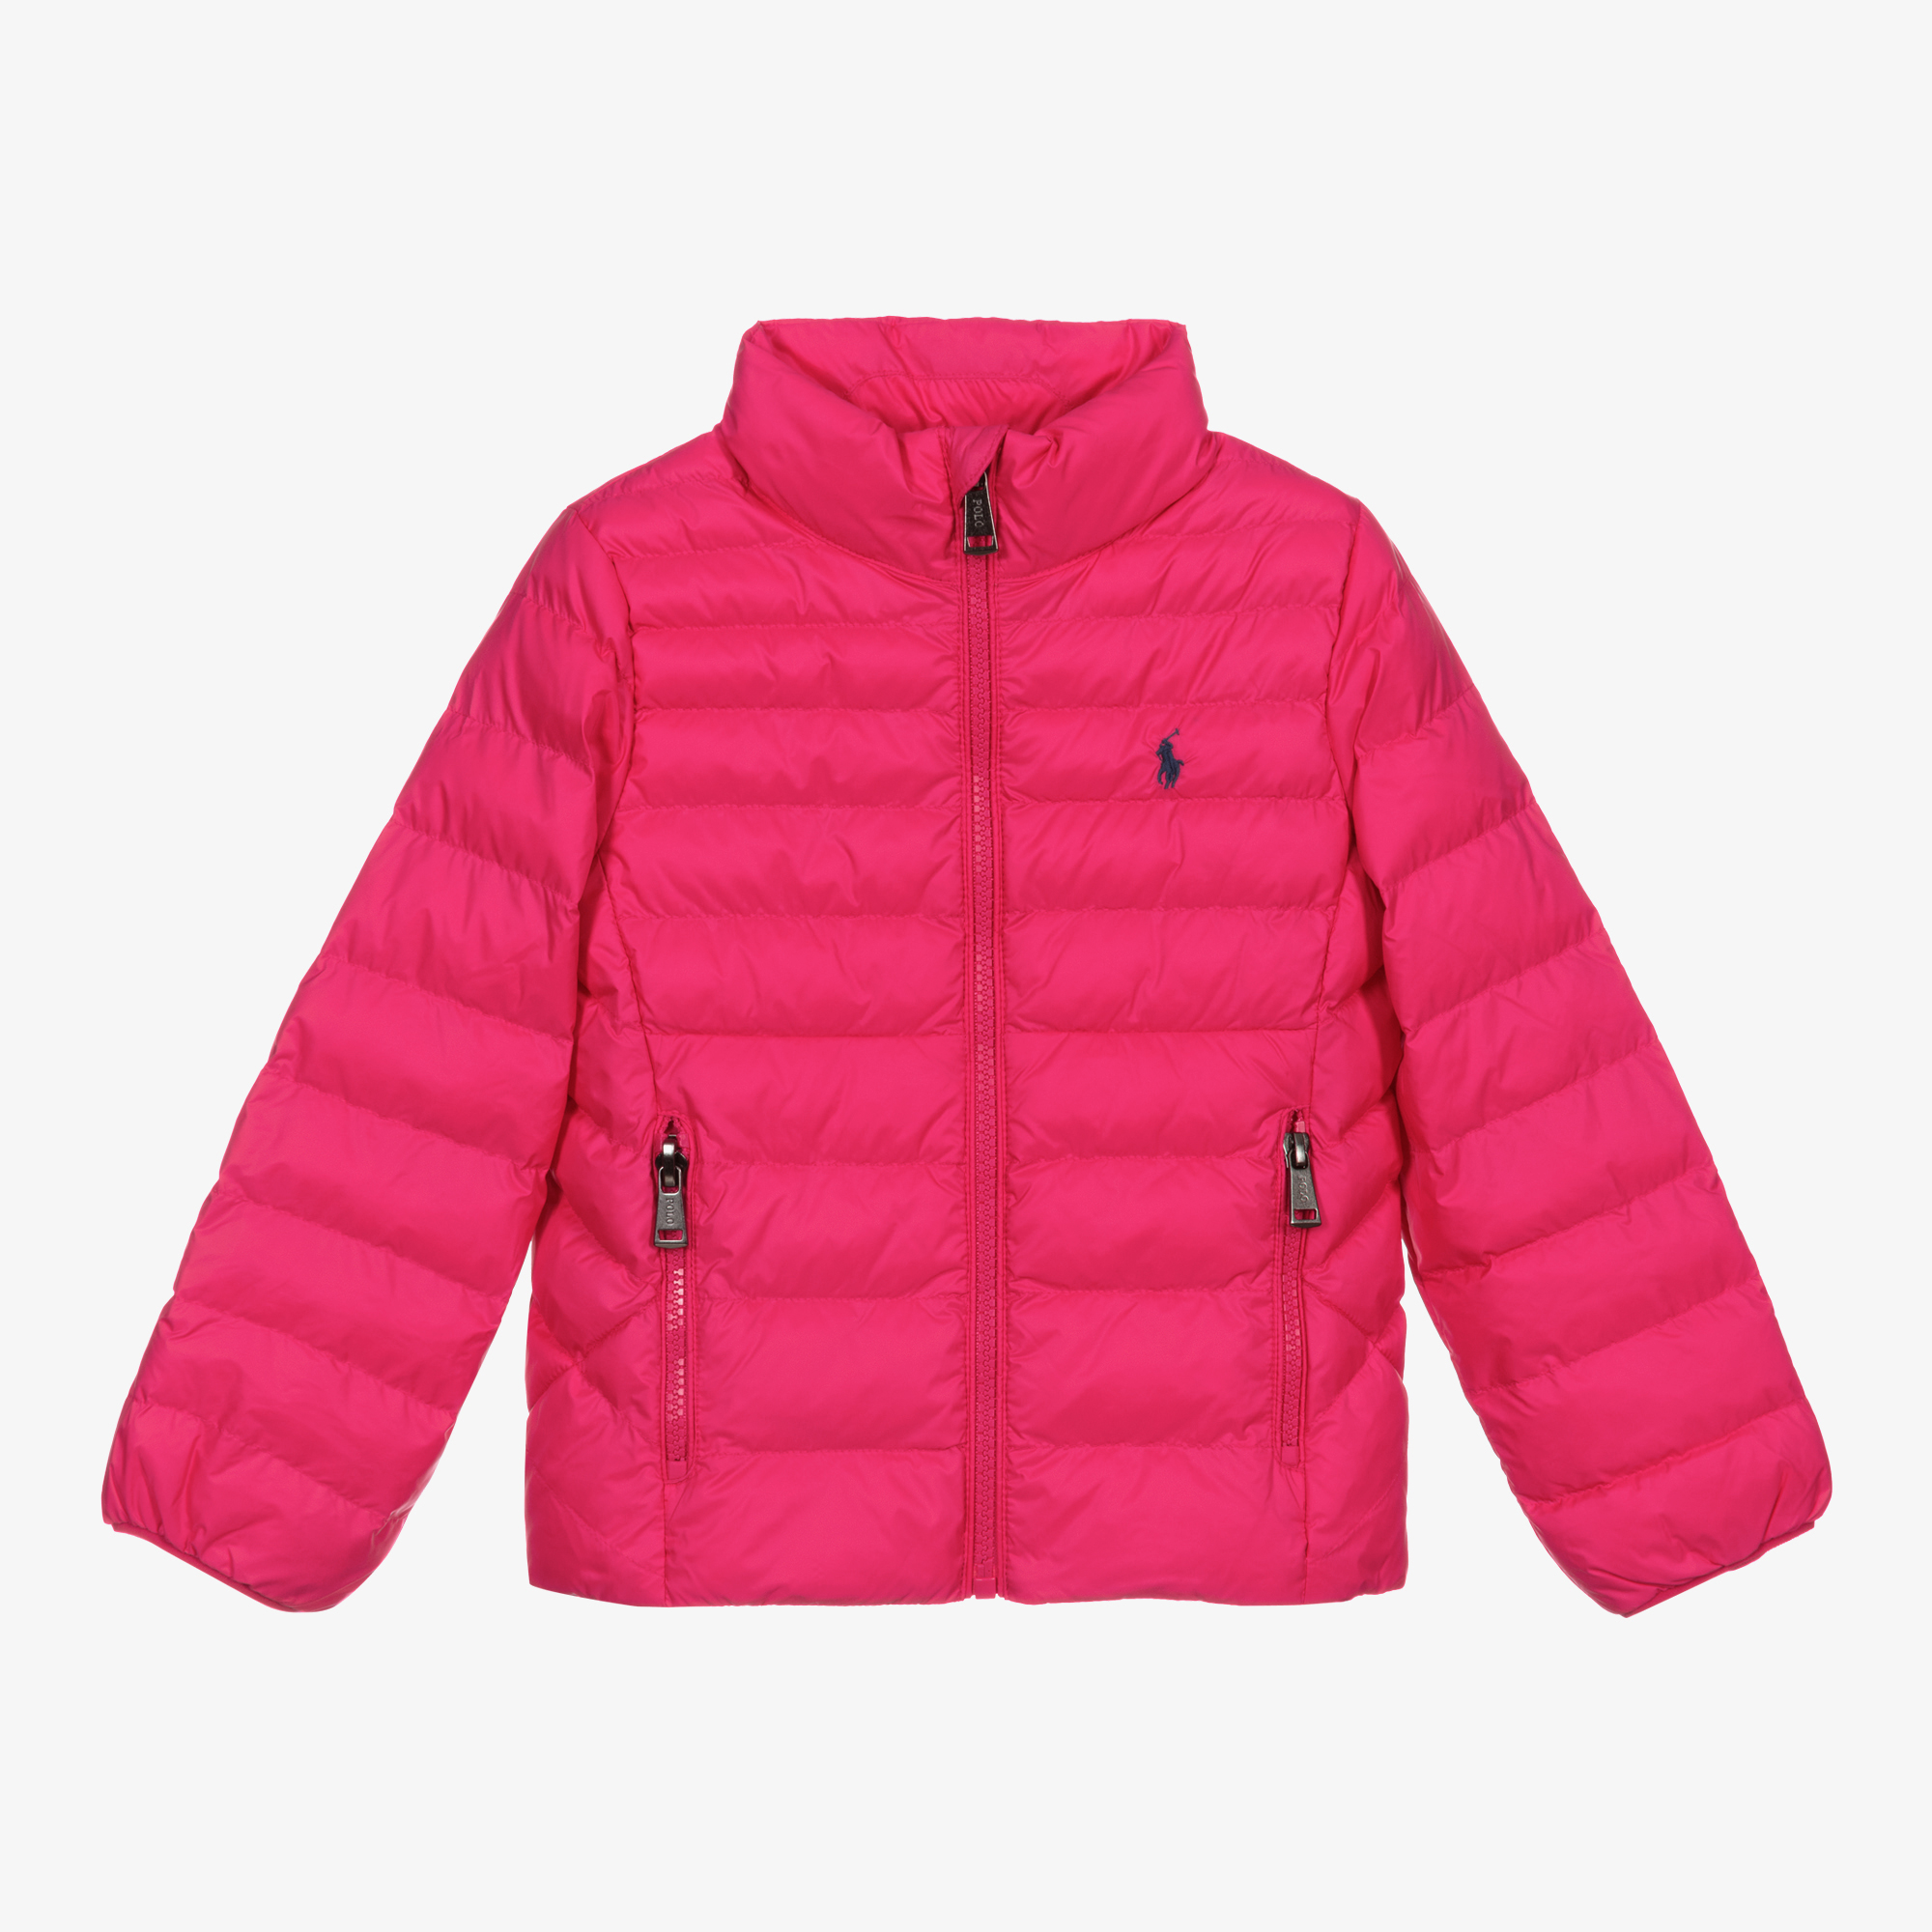 Polo Ralph Lauren - Girls Pink Puffer Jacket | Childrensalon Outlet